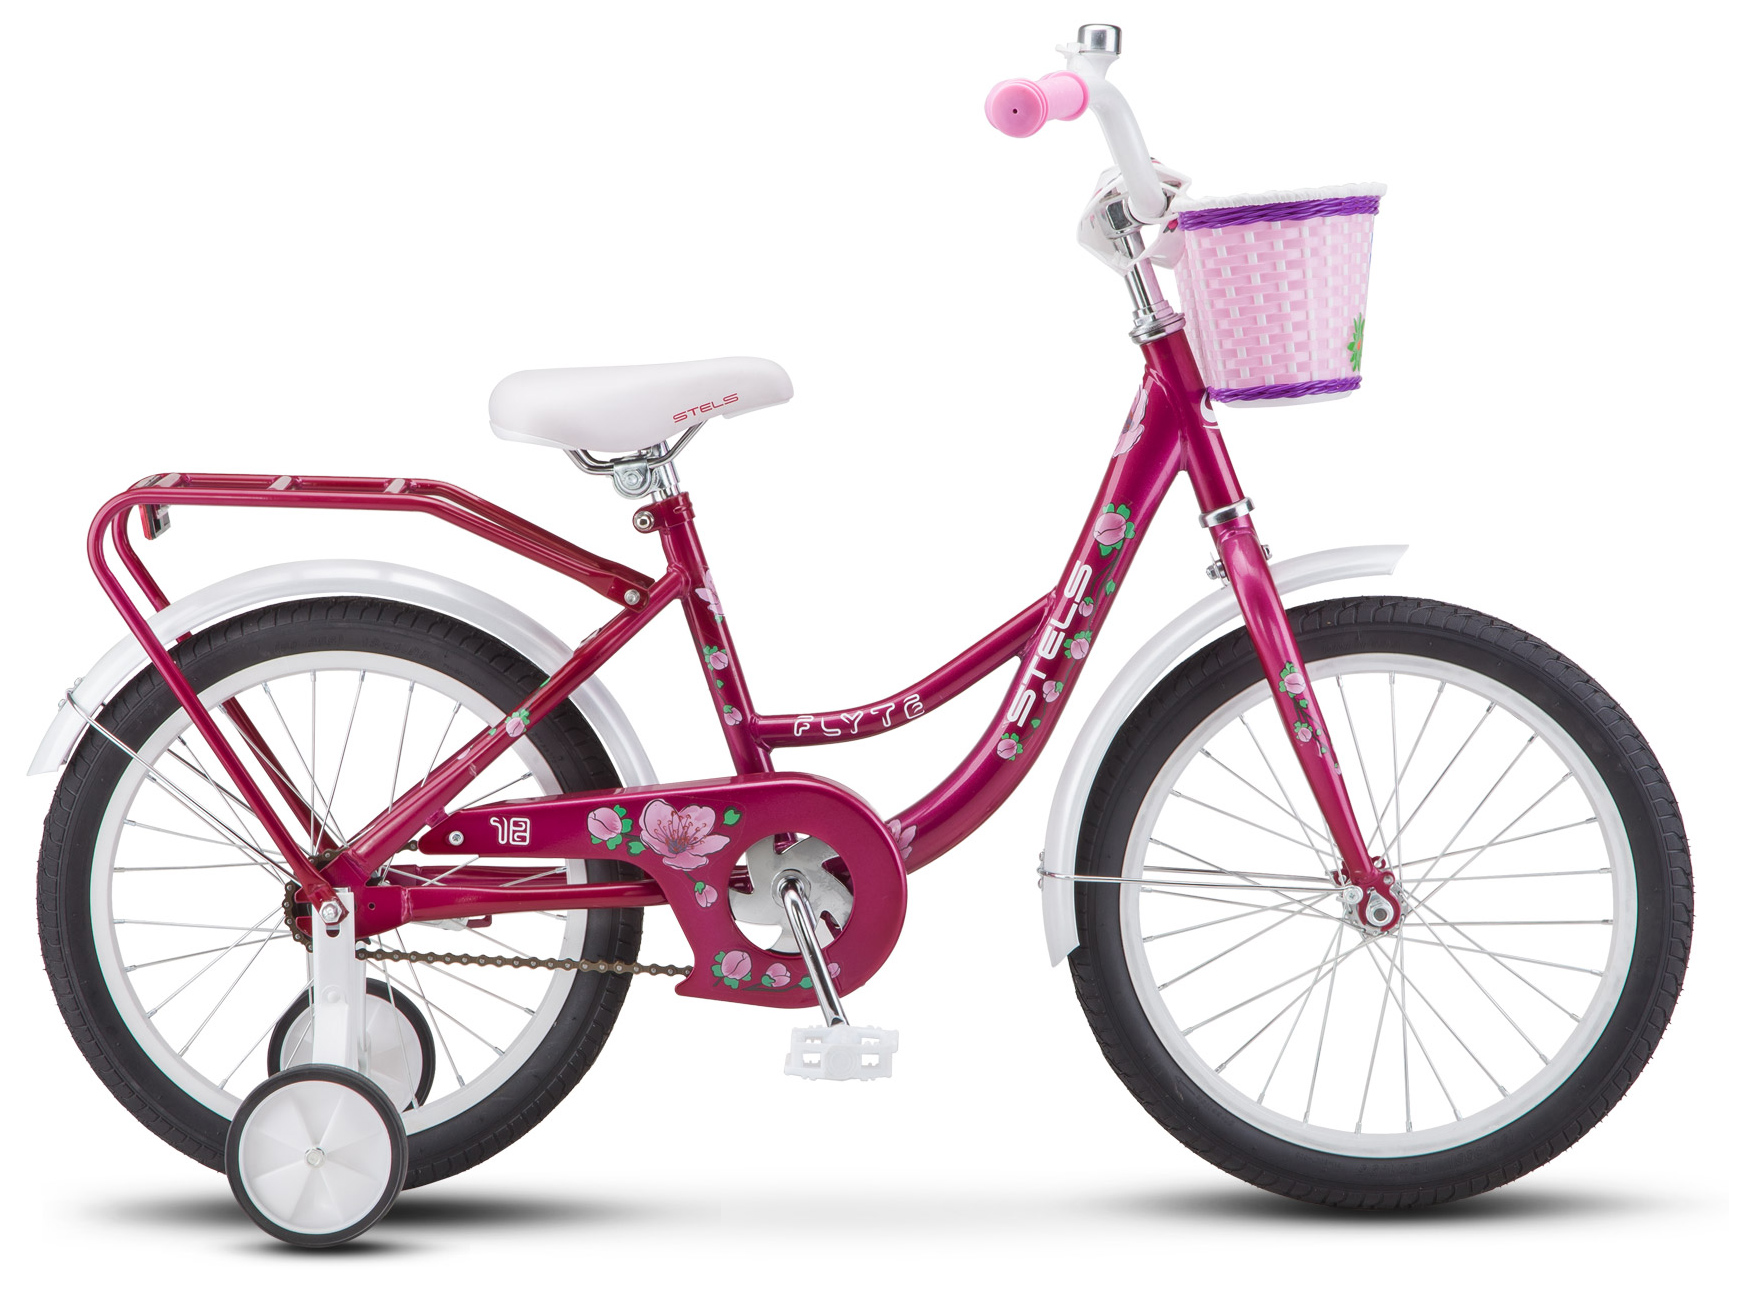  Велосипед трехколесный детский велосипед Stels Flyte Lady 18 (Z011) 2019